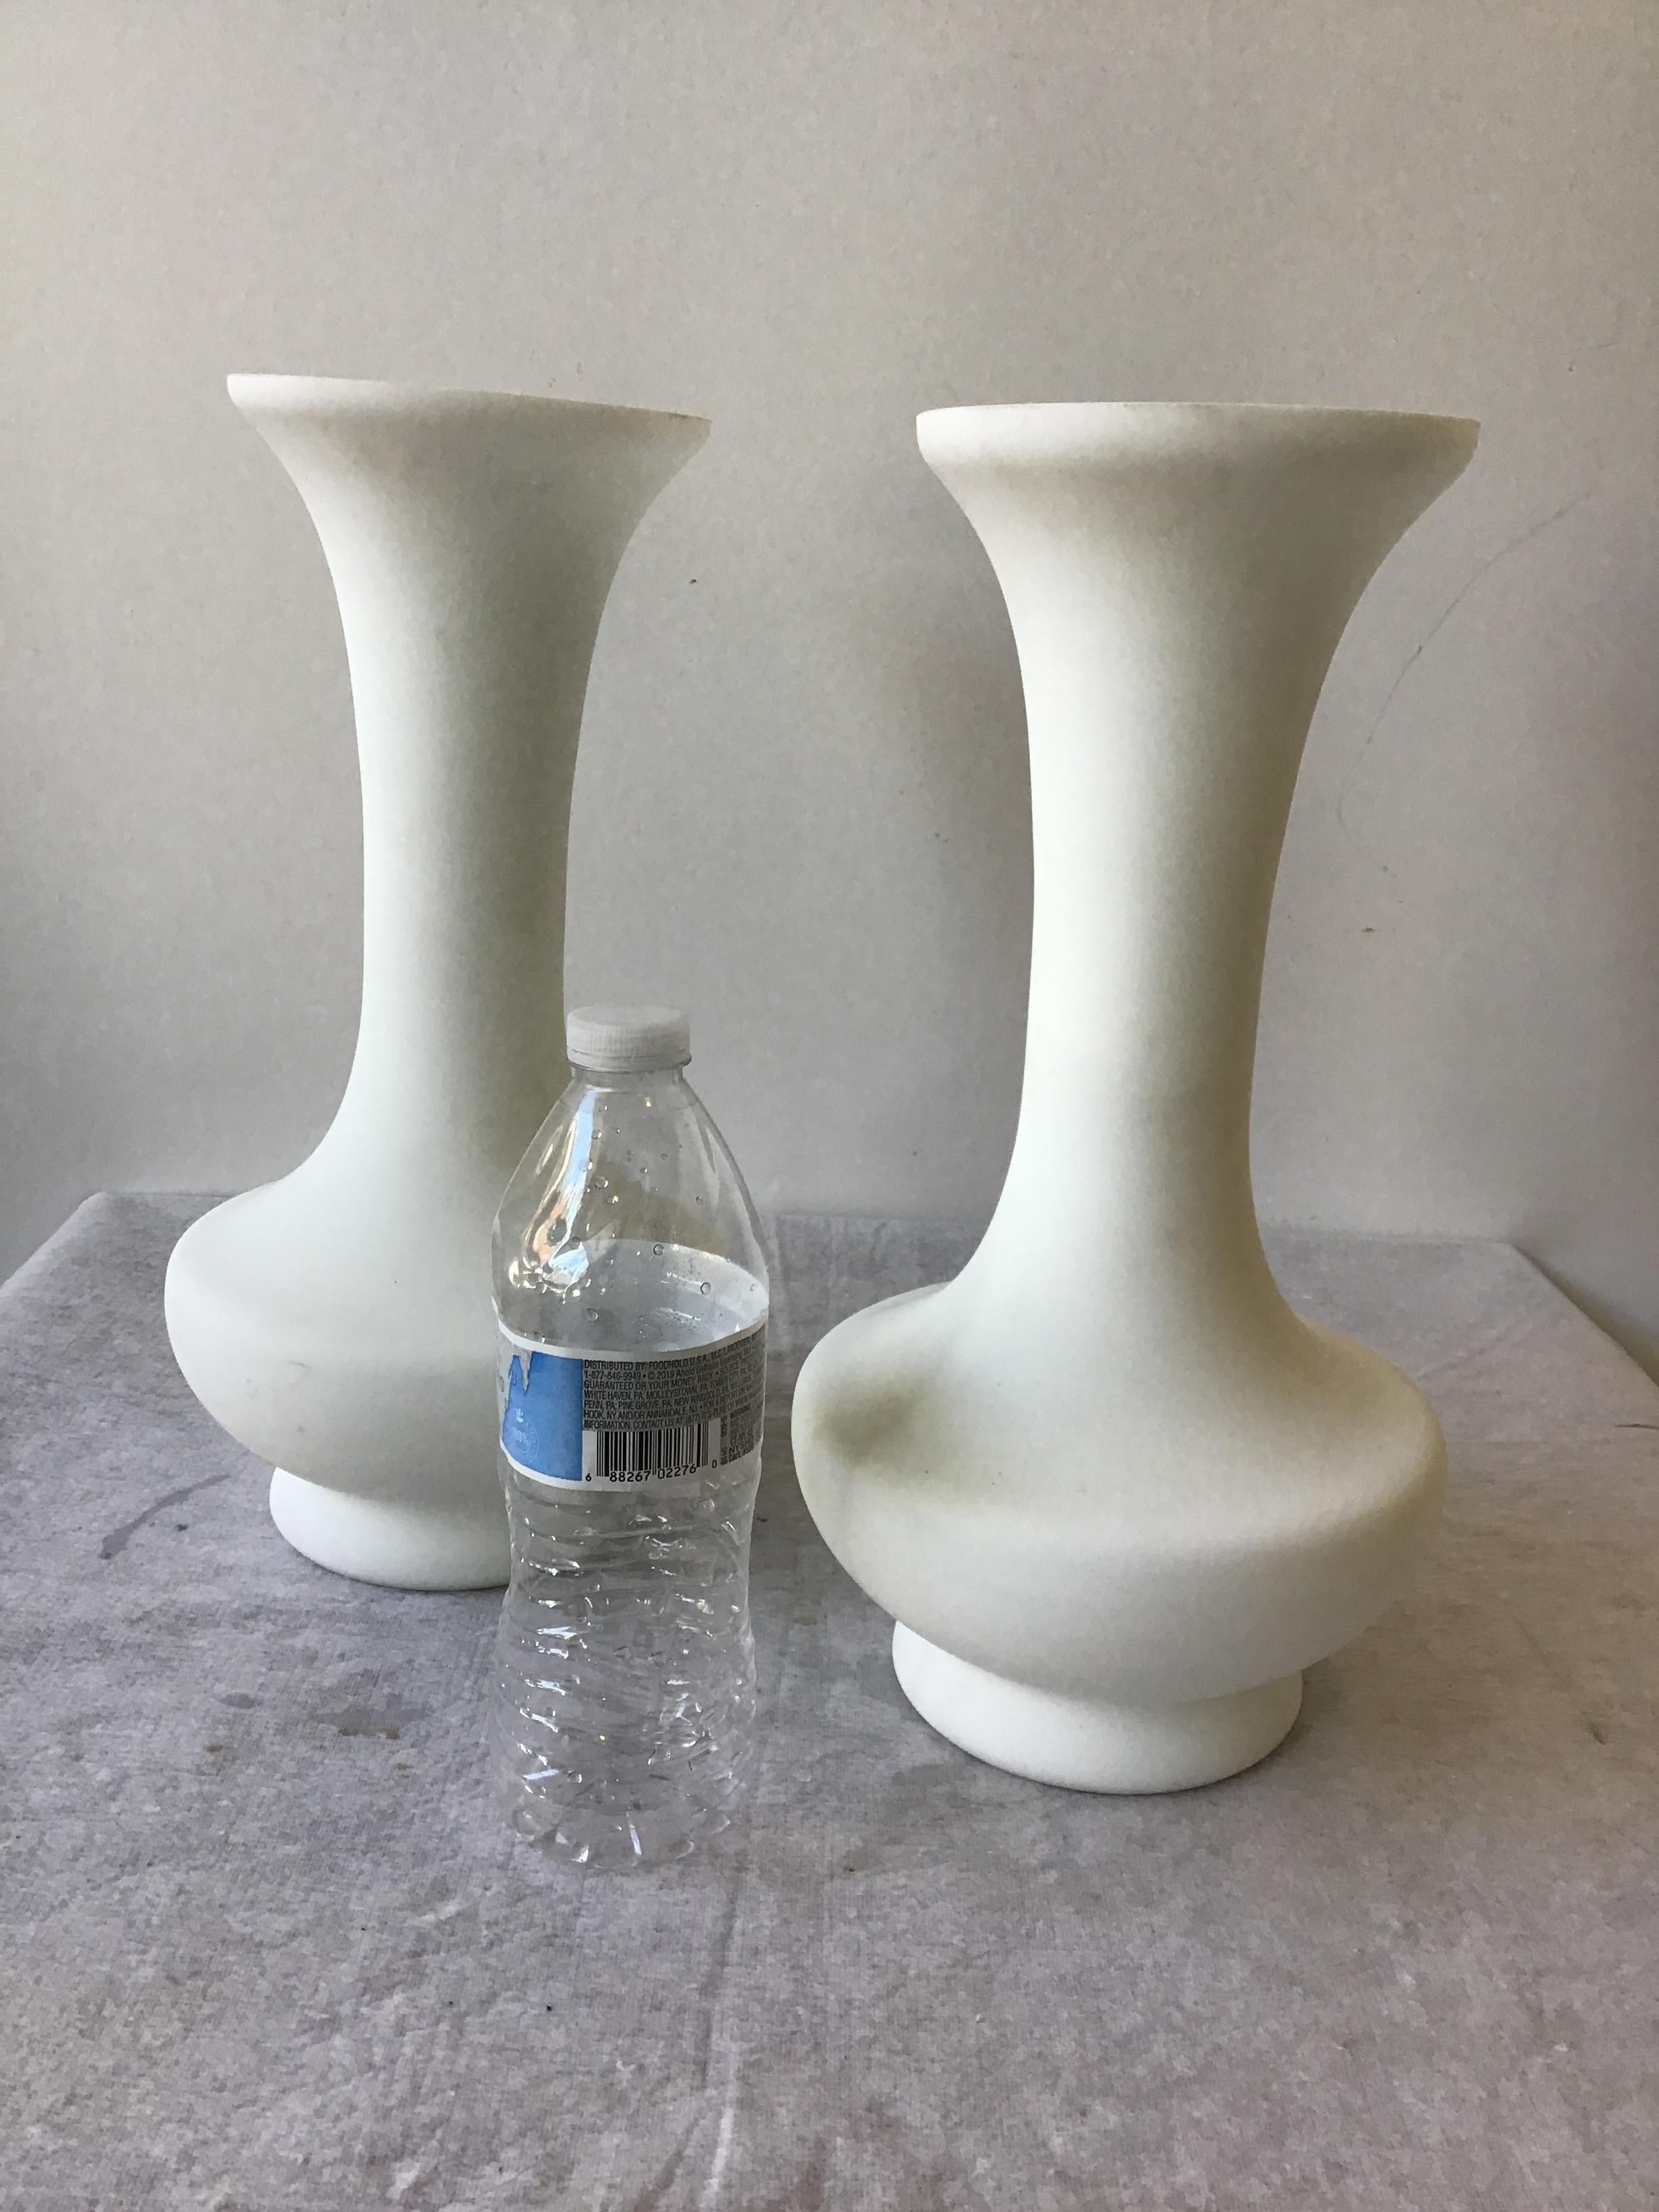 Ein Paar italienische Lampen aus weißem Milchglas aus den 1960er Jahren.
Lampen brauchen alle Teile, um zu funktionieren.